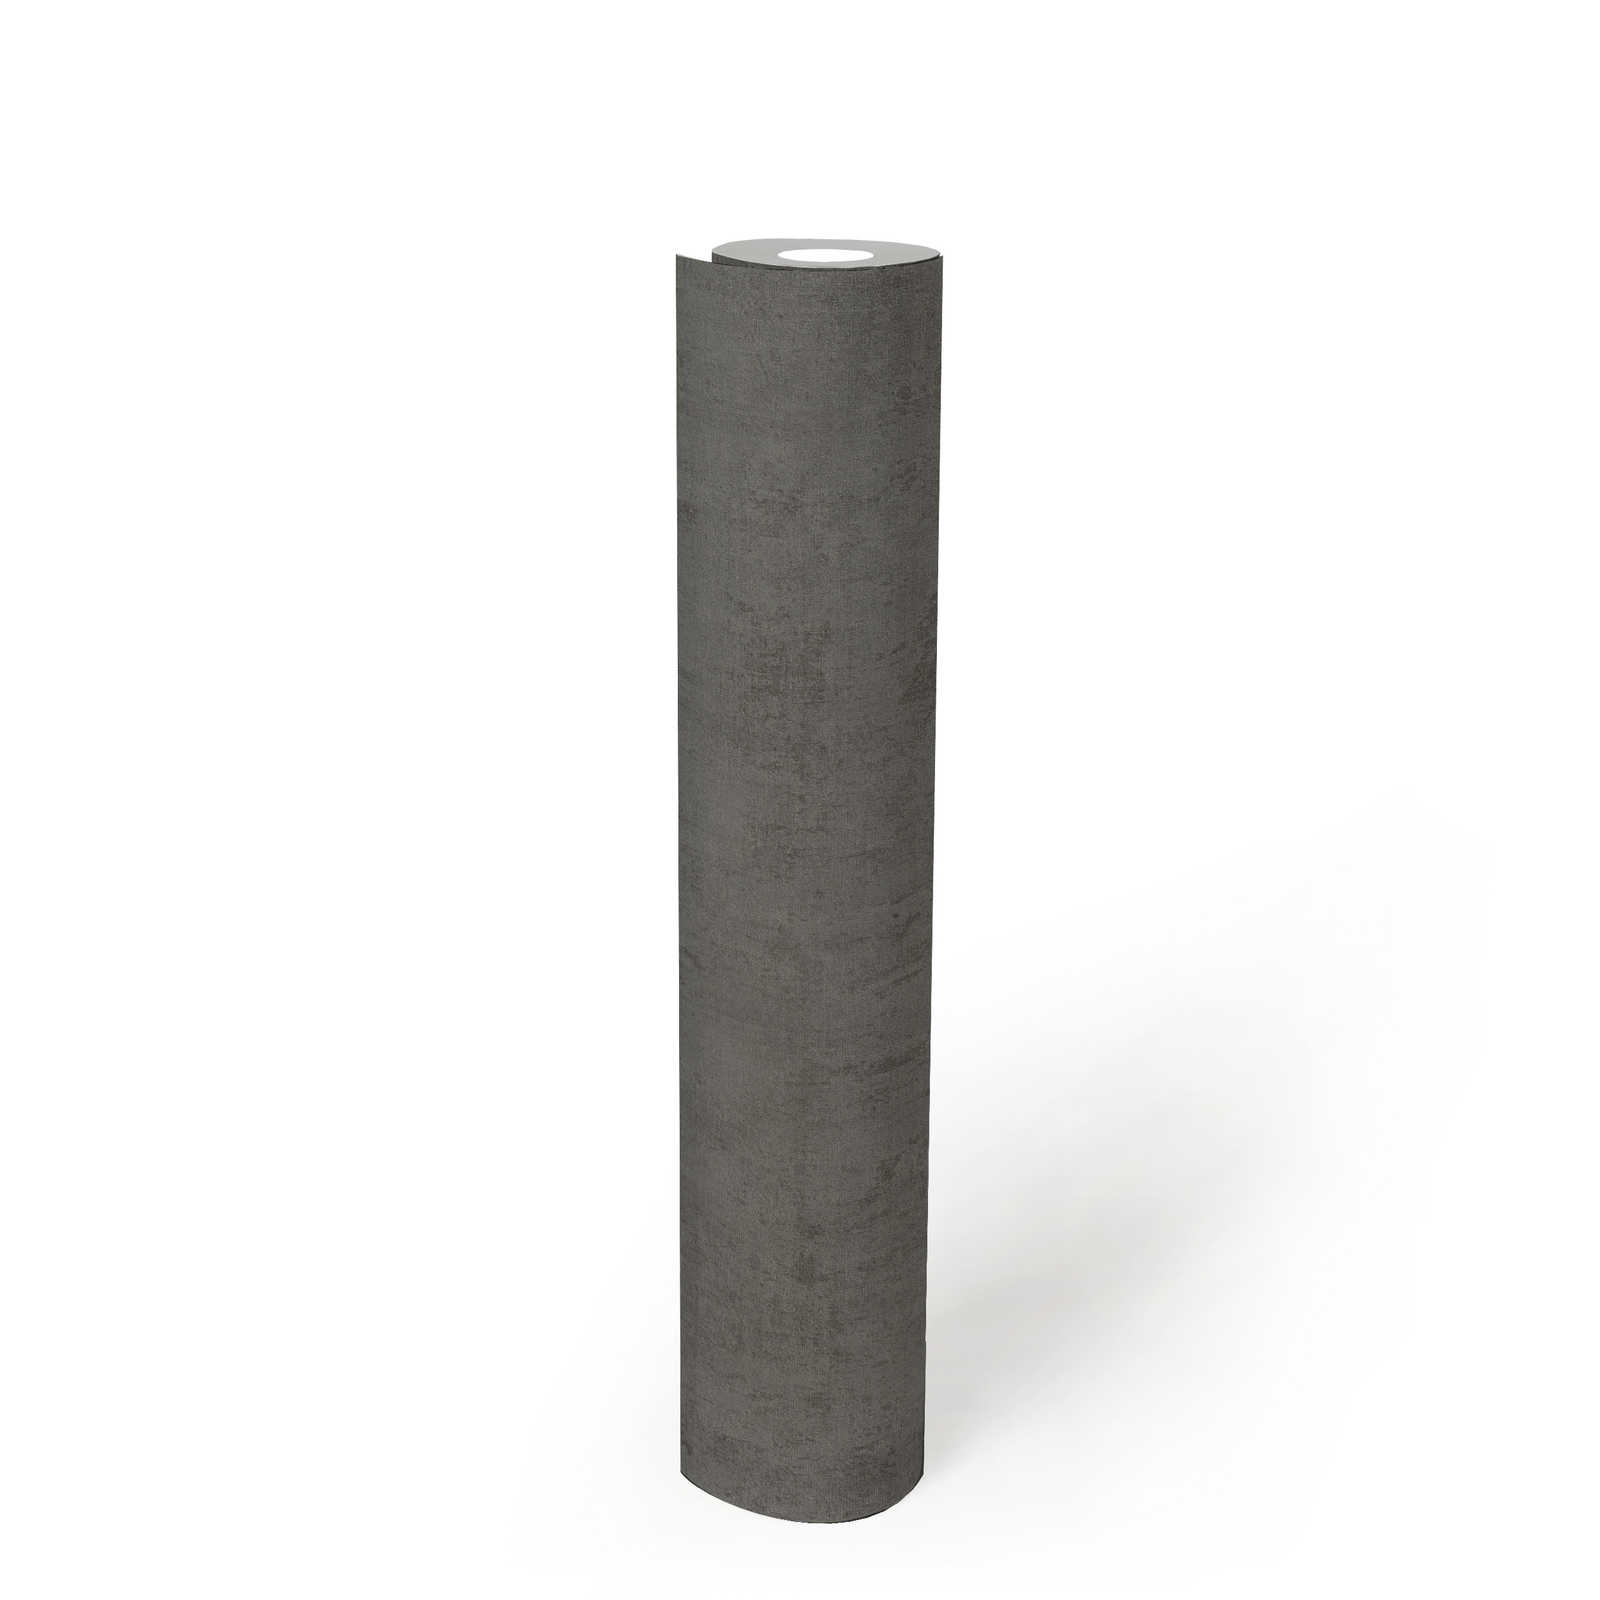             Papel pintado de color gris oscuro con estructura de yeso y en relieve
        